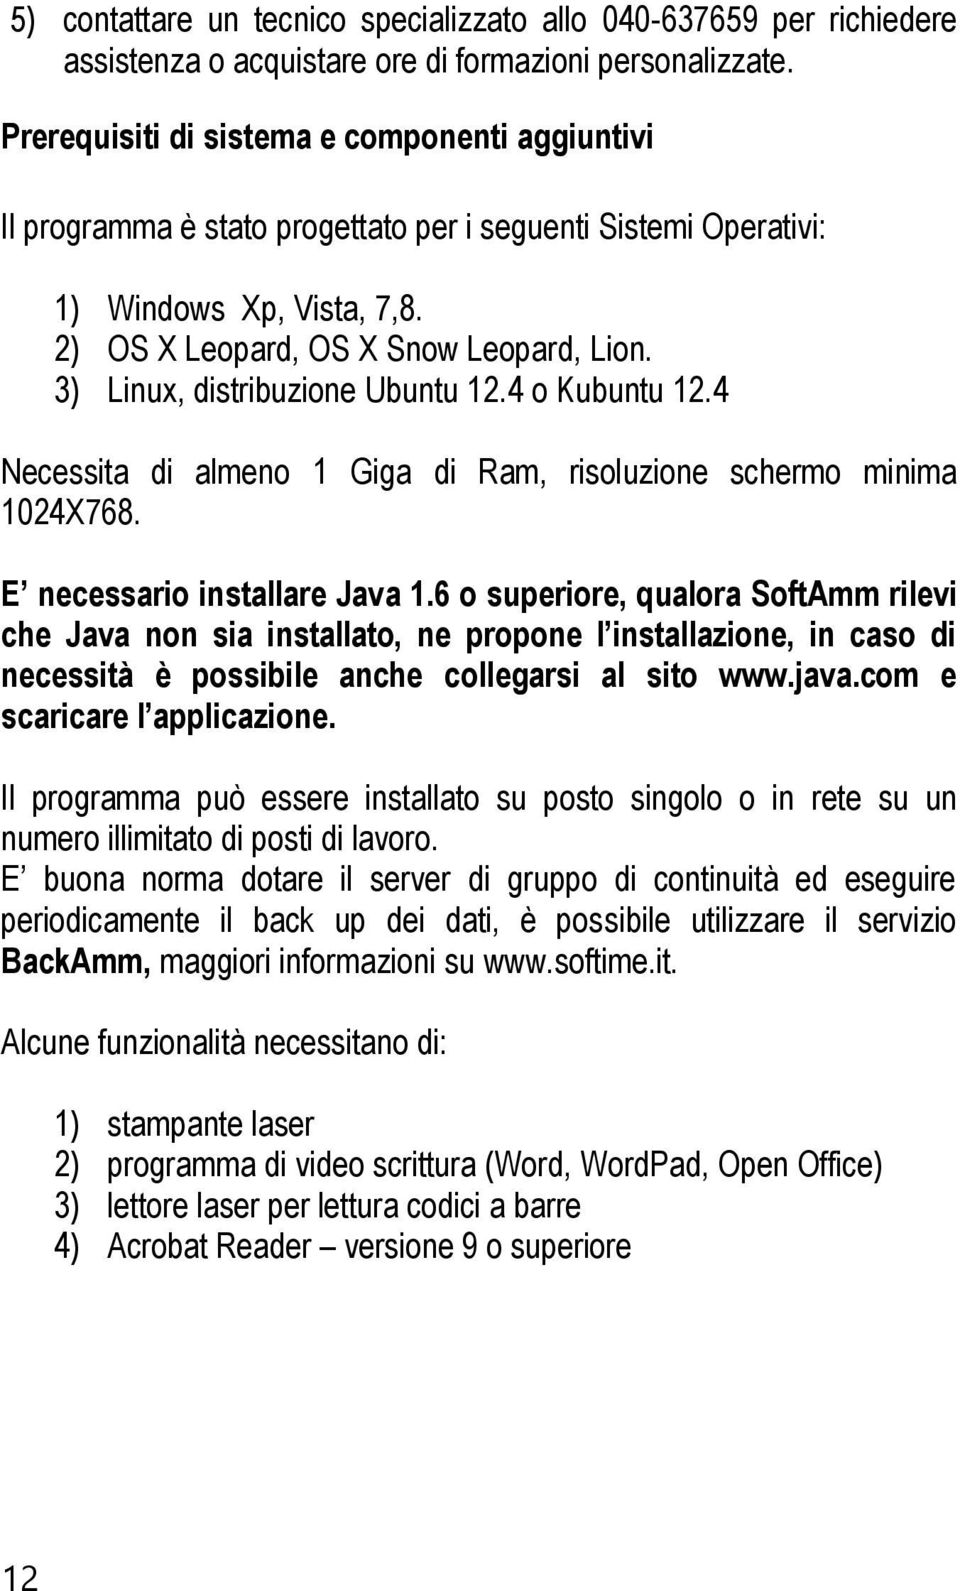 3) Linux, distribuzione Ubuntu 12.4 o Kubuntu 12.4 Necessita di almeno 1 Giga di Ram, risoluzione schermo minima 1024X768. E necessario installare Java 1.